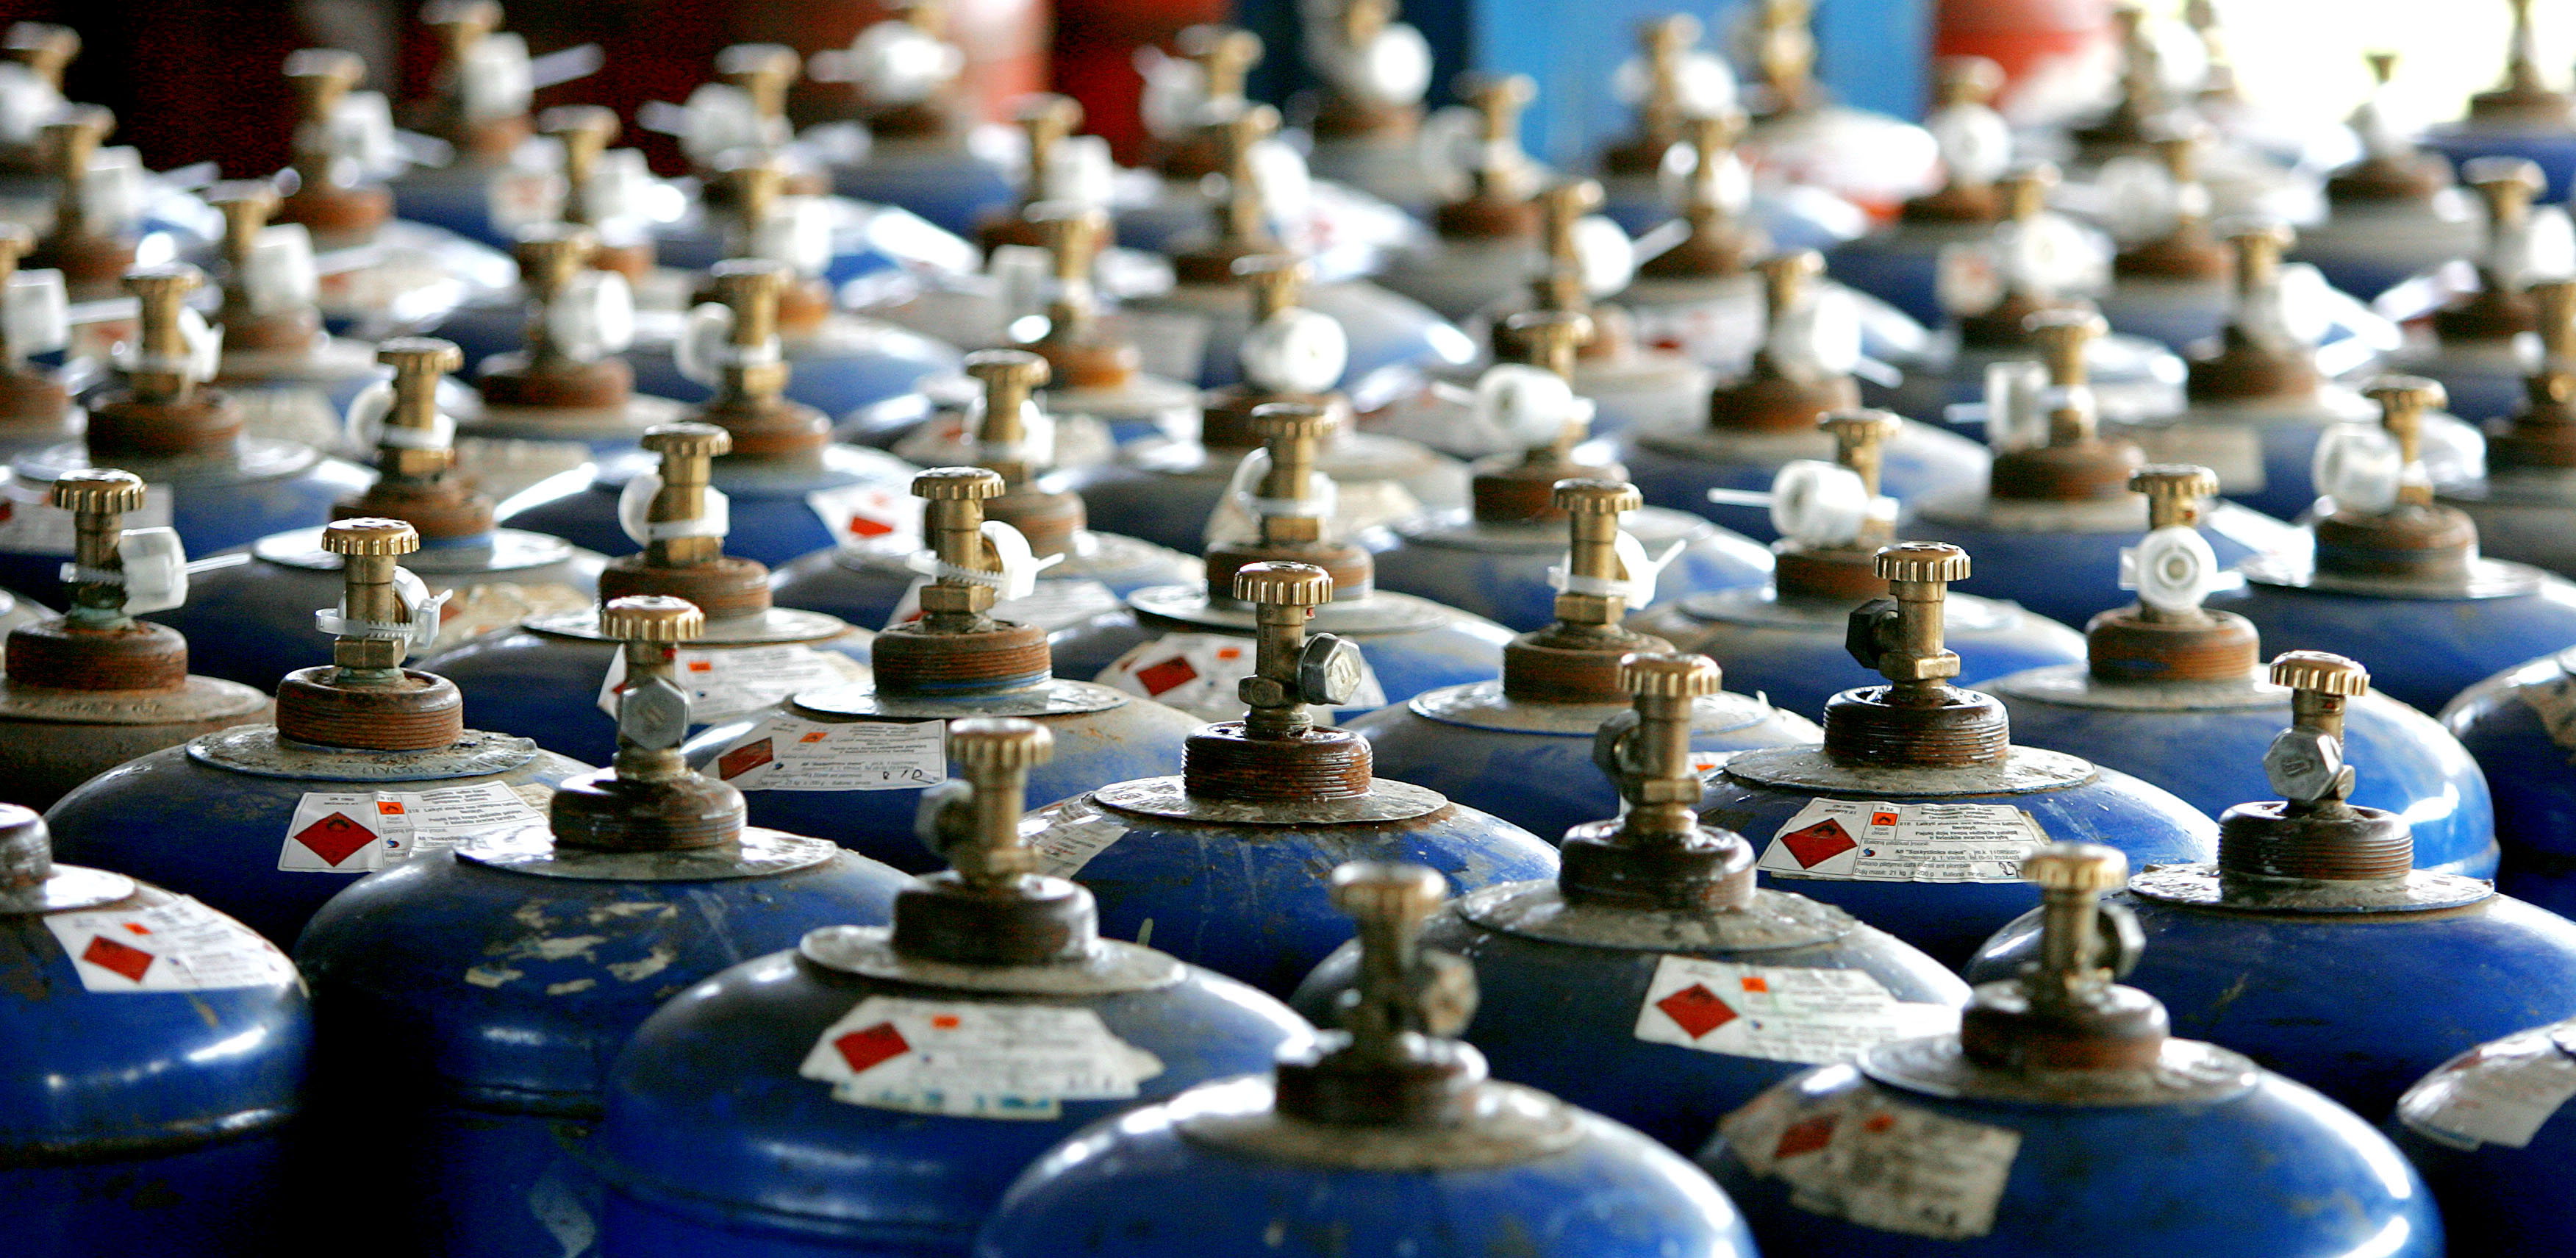 Gassflasker er ikke sene i priskappløpet: han advarer om at det er risikabelt å samle dem